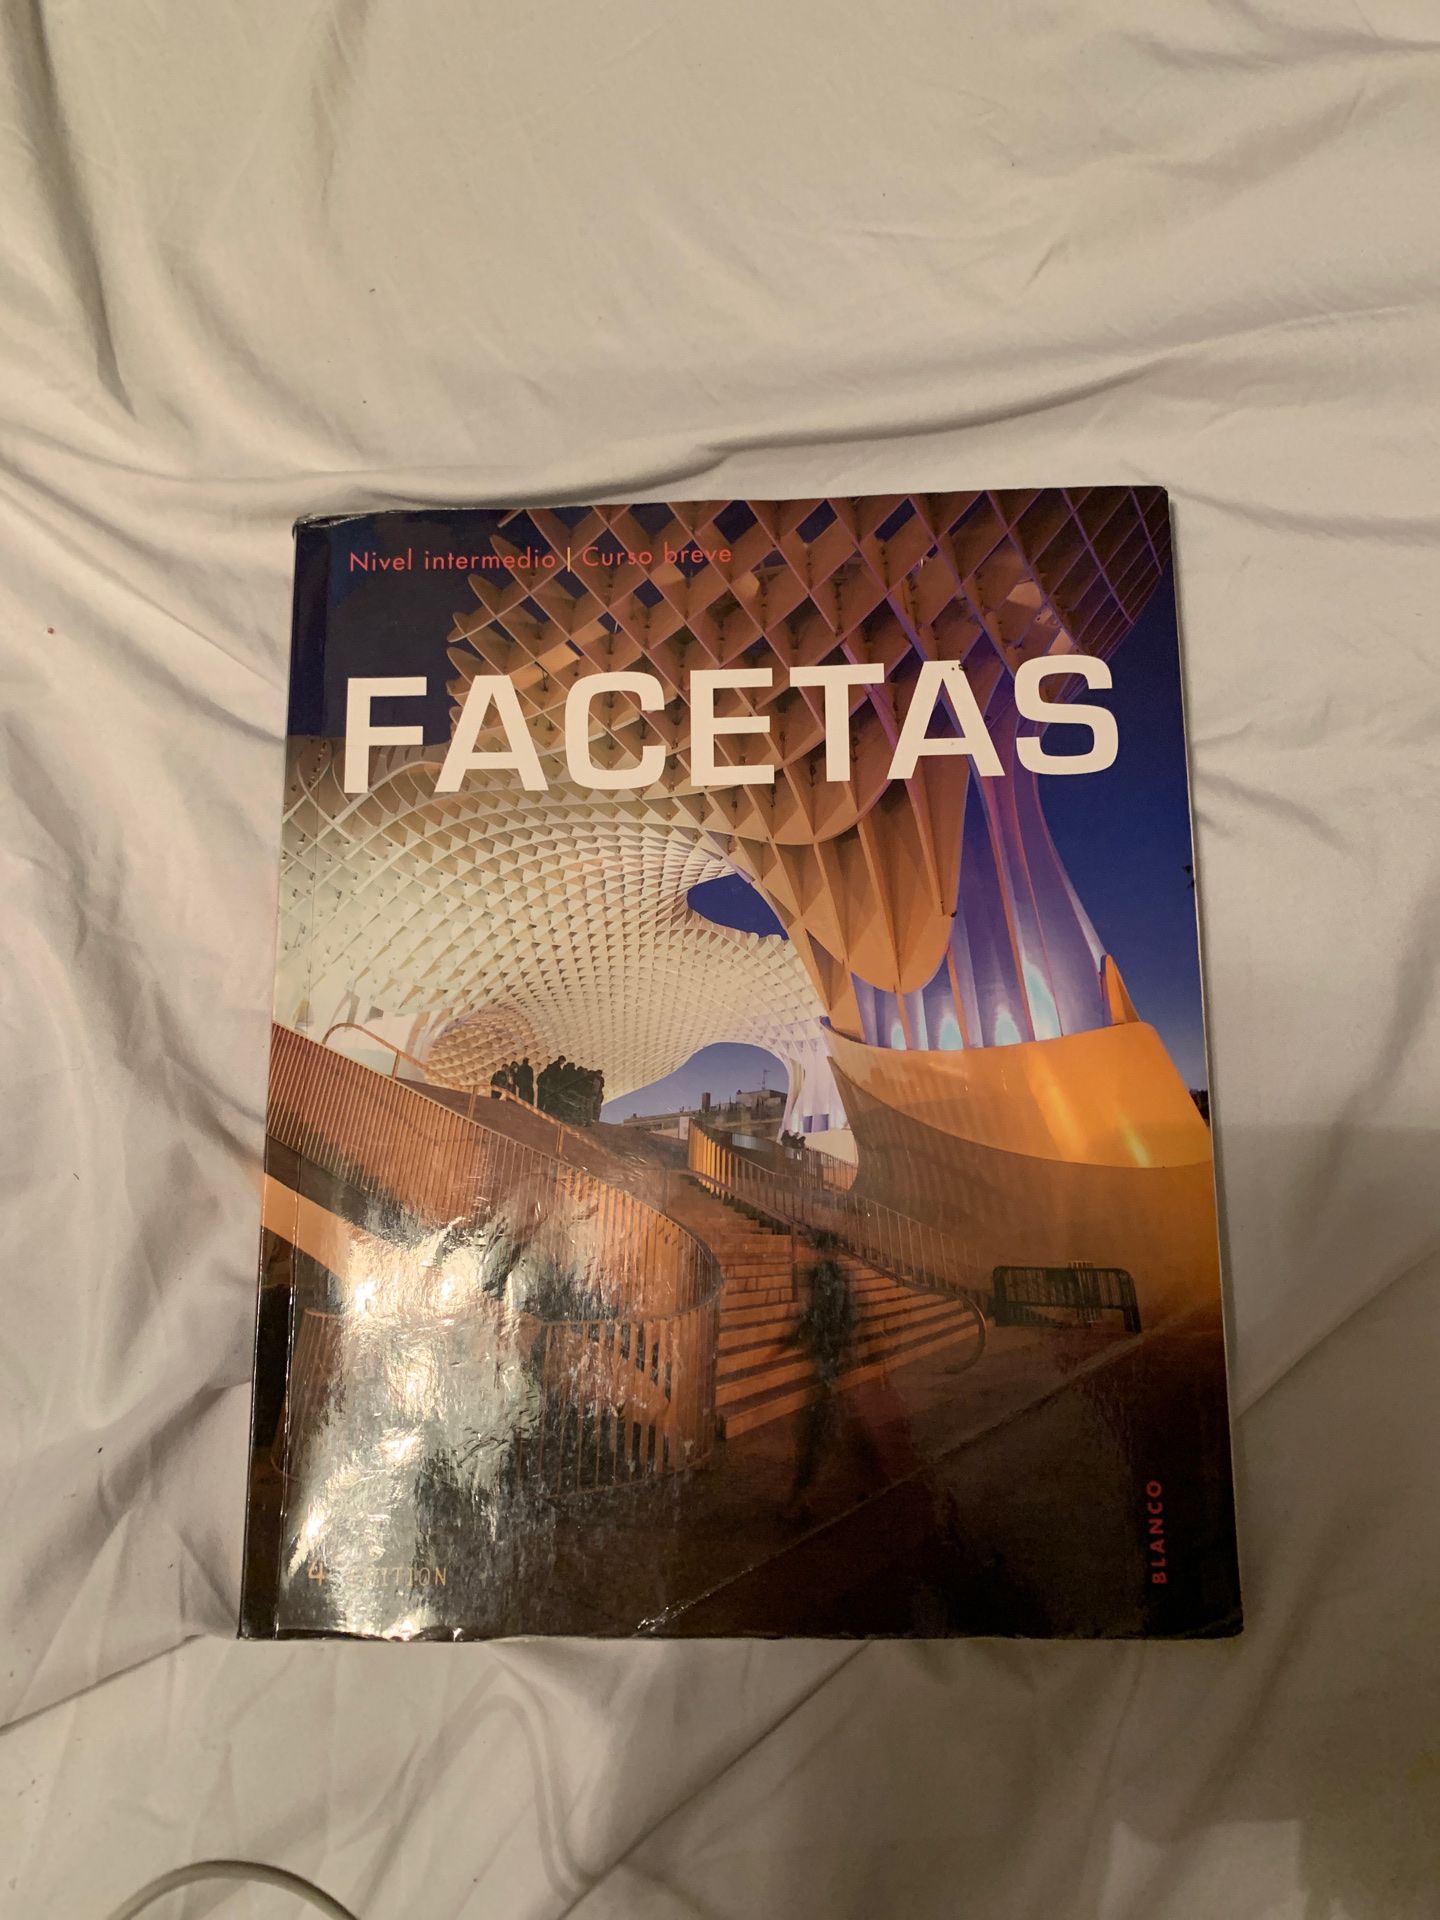 Facetas book